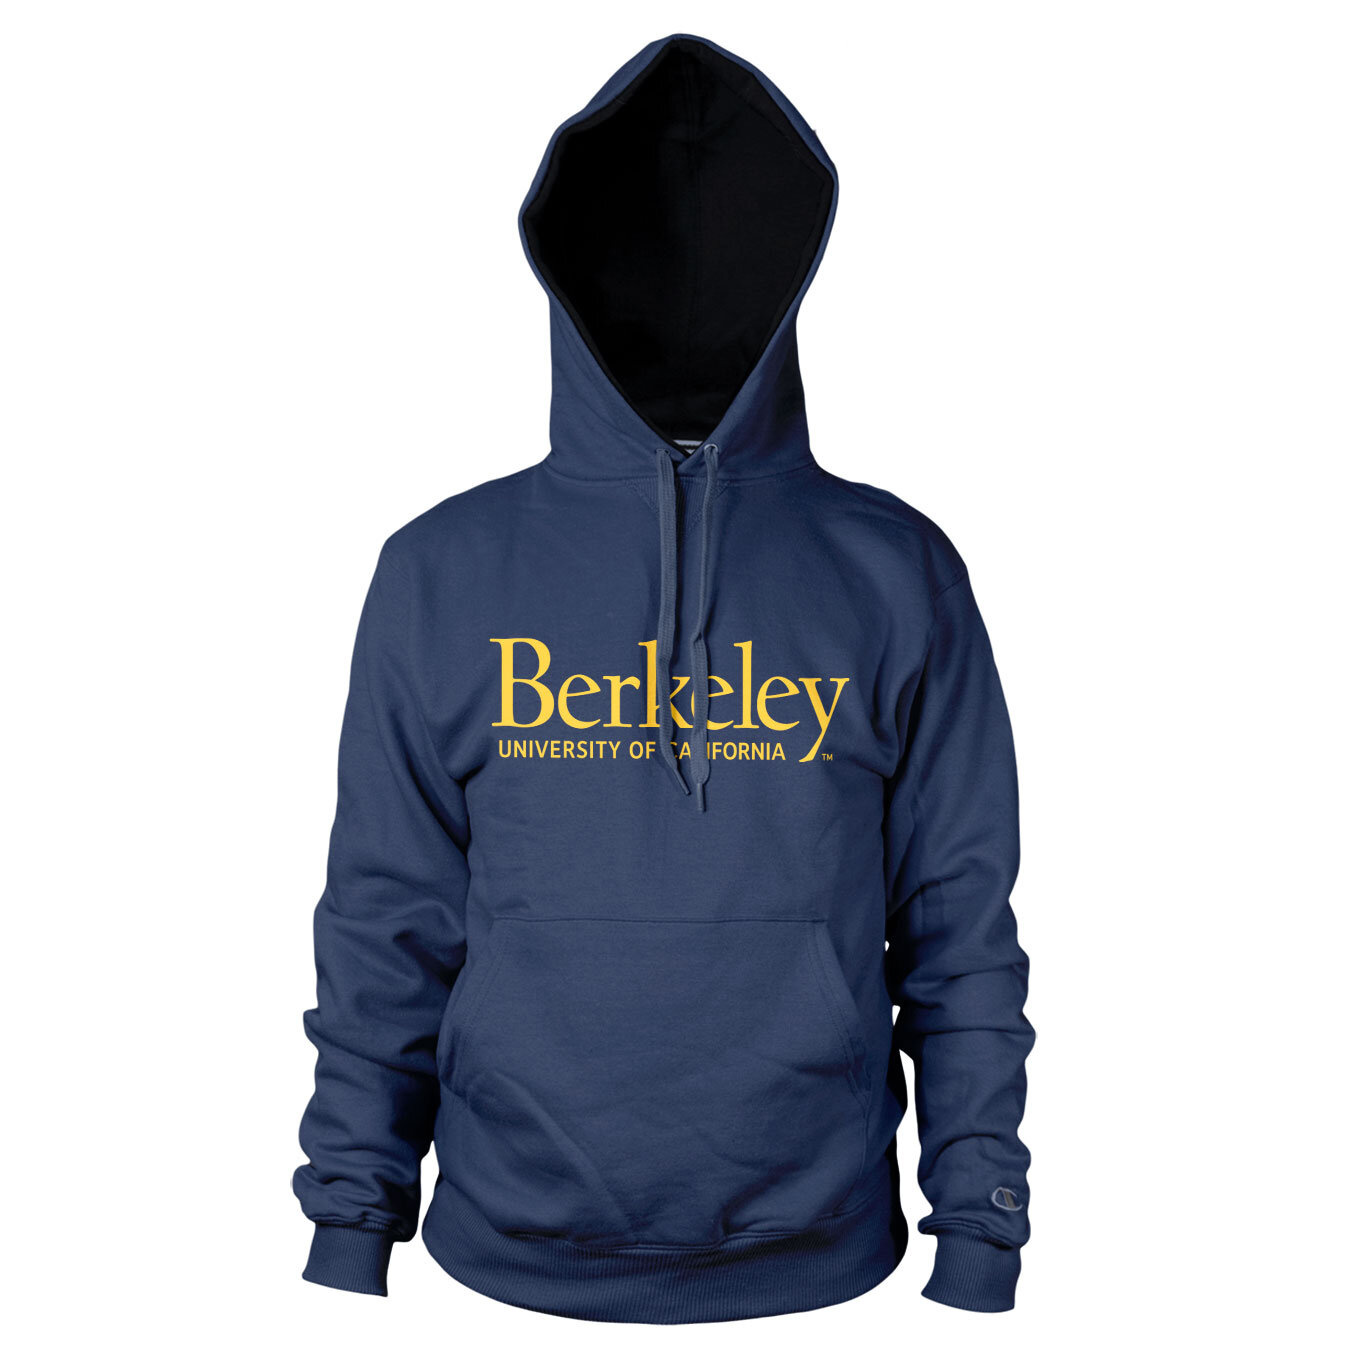 Berkeley - University Of California Hoodie